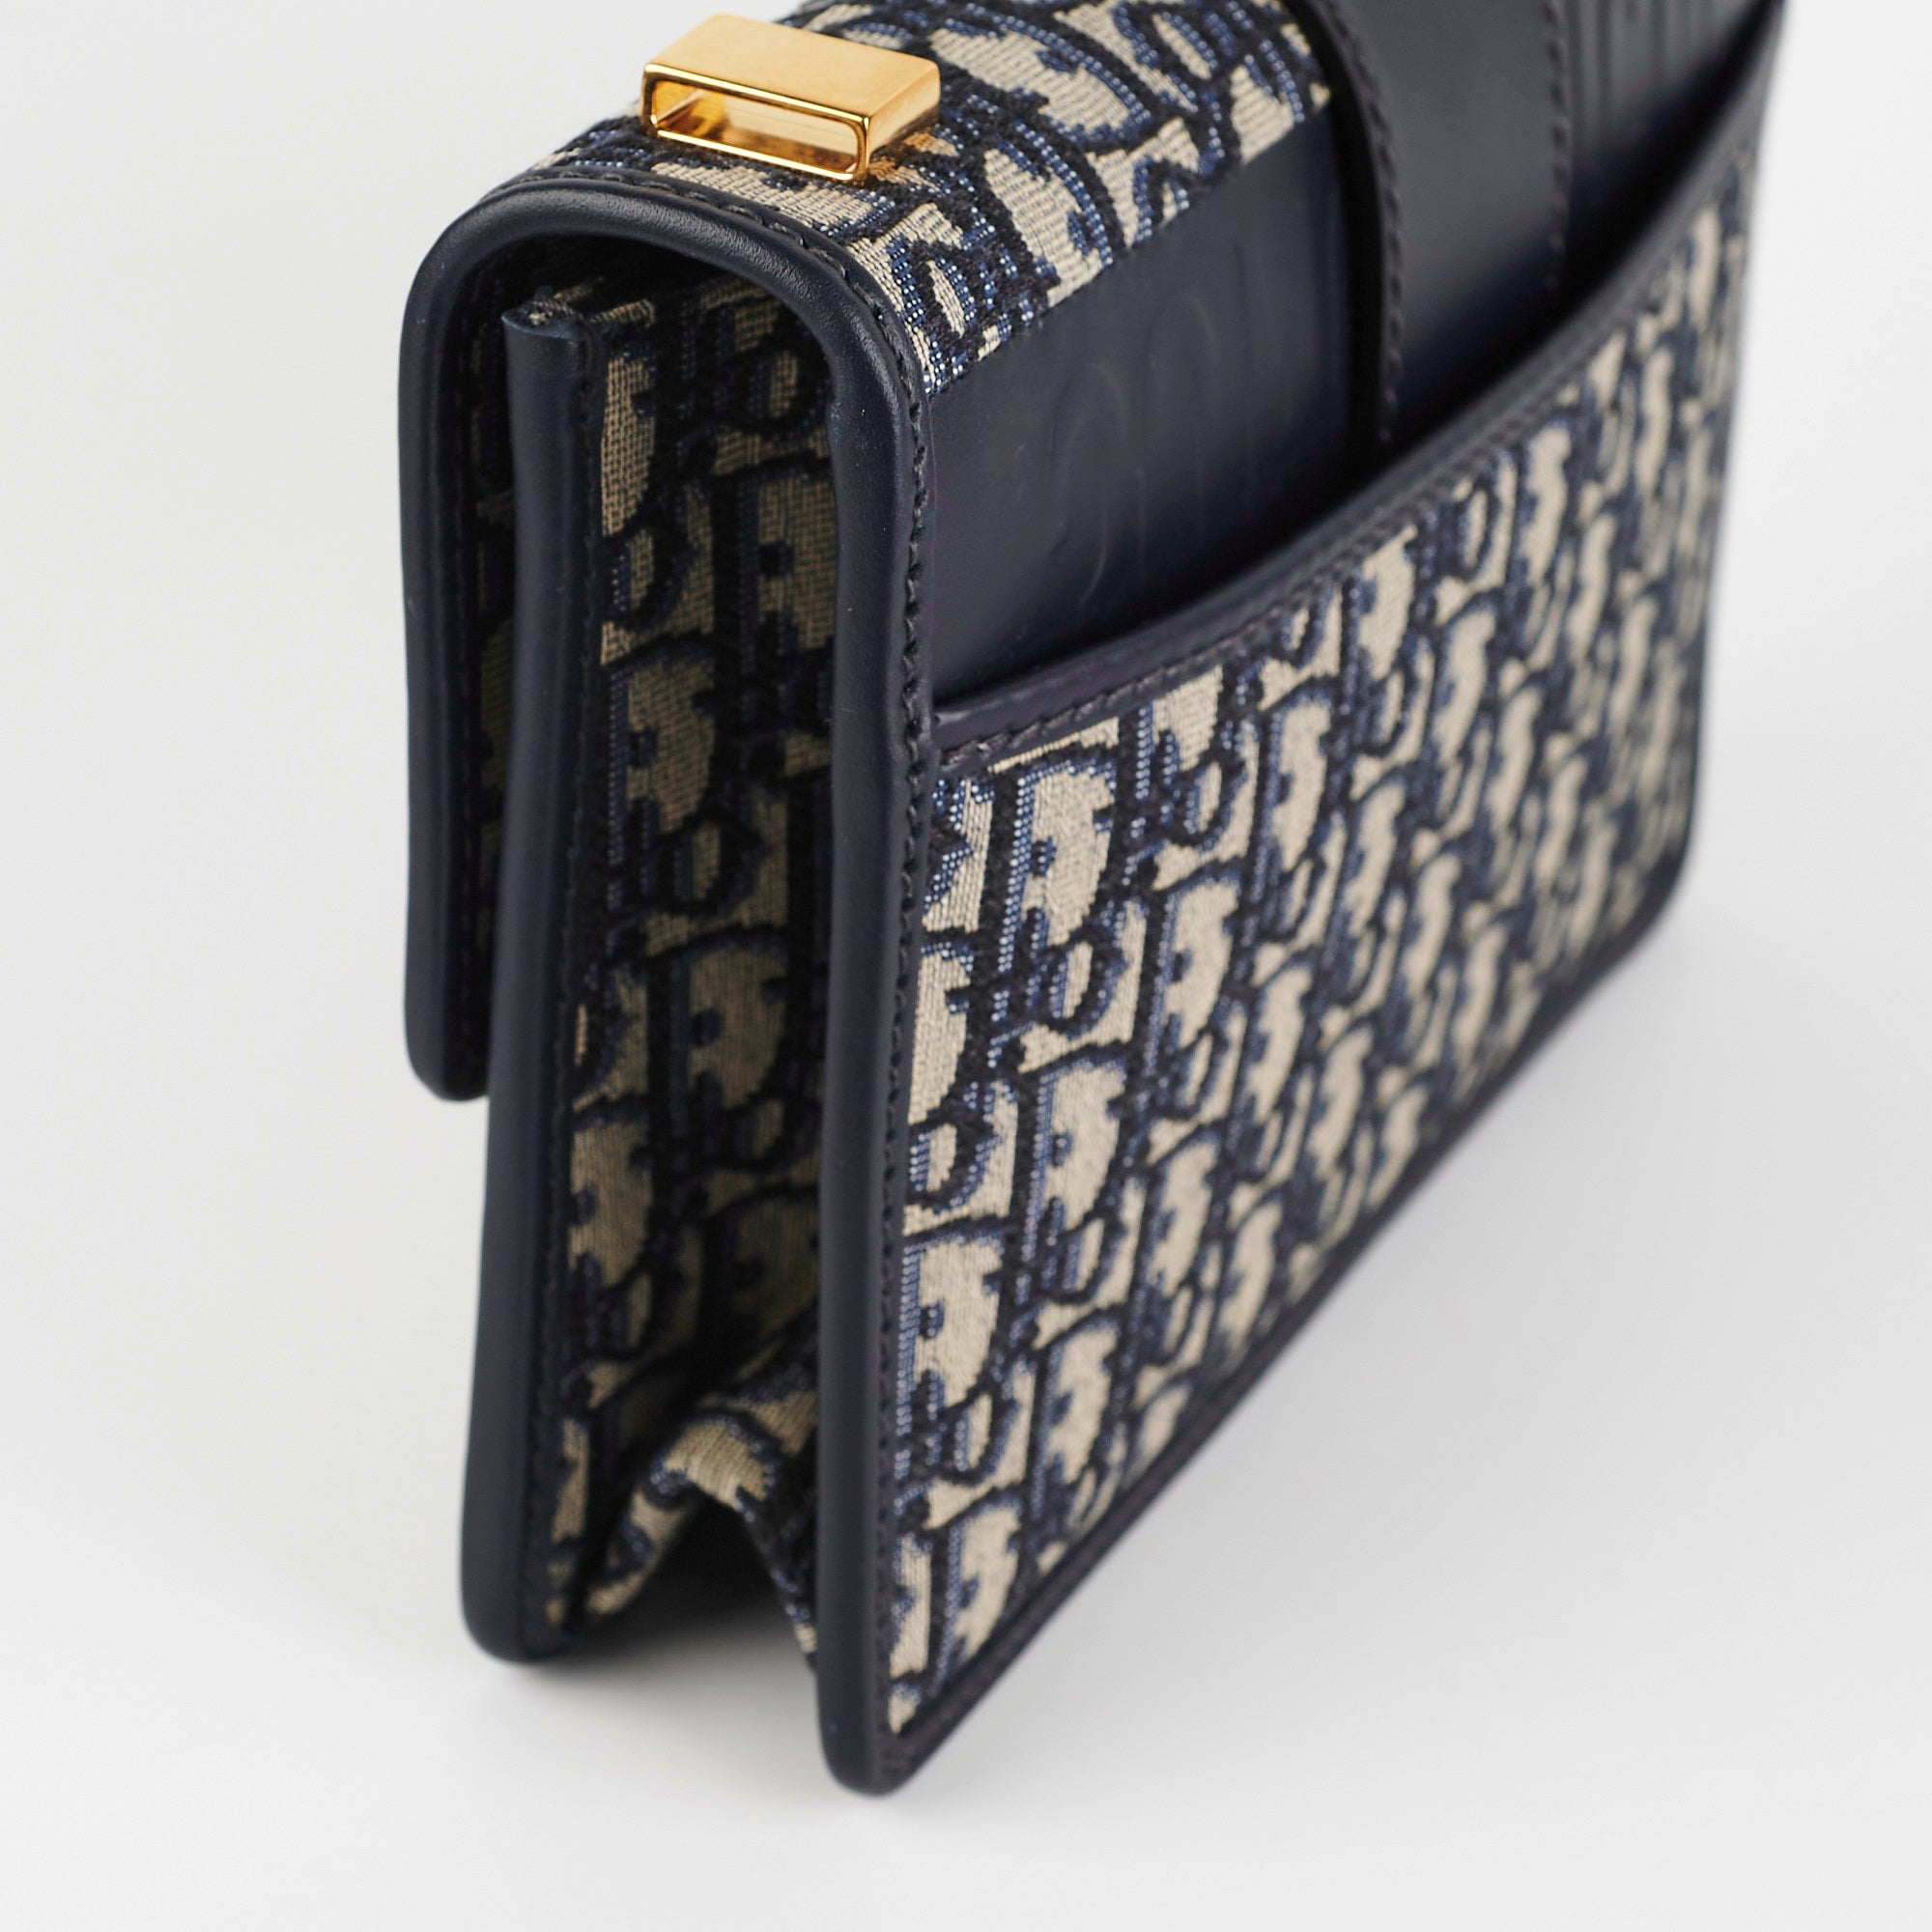 Christian Dior Montaigne 30 Box Blue Oblique Bag - THE PURSE AFFAIR